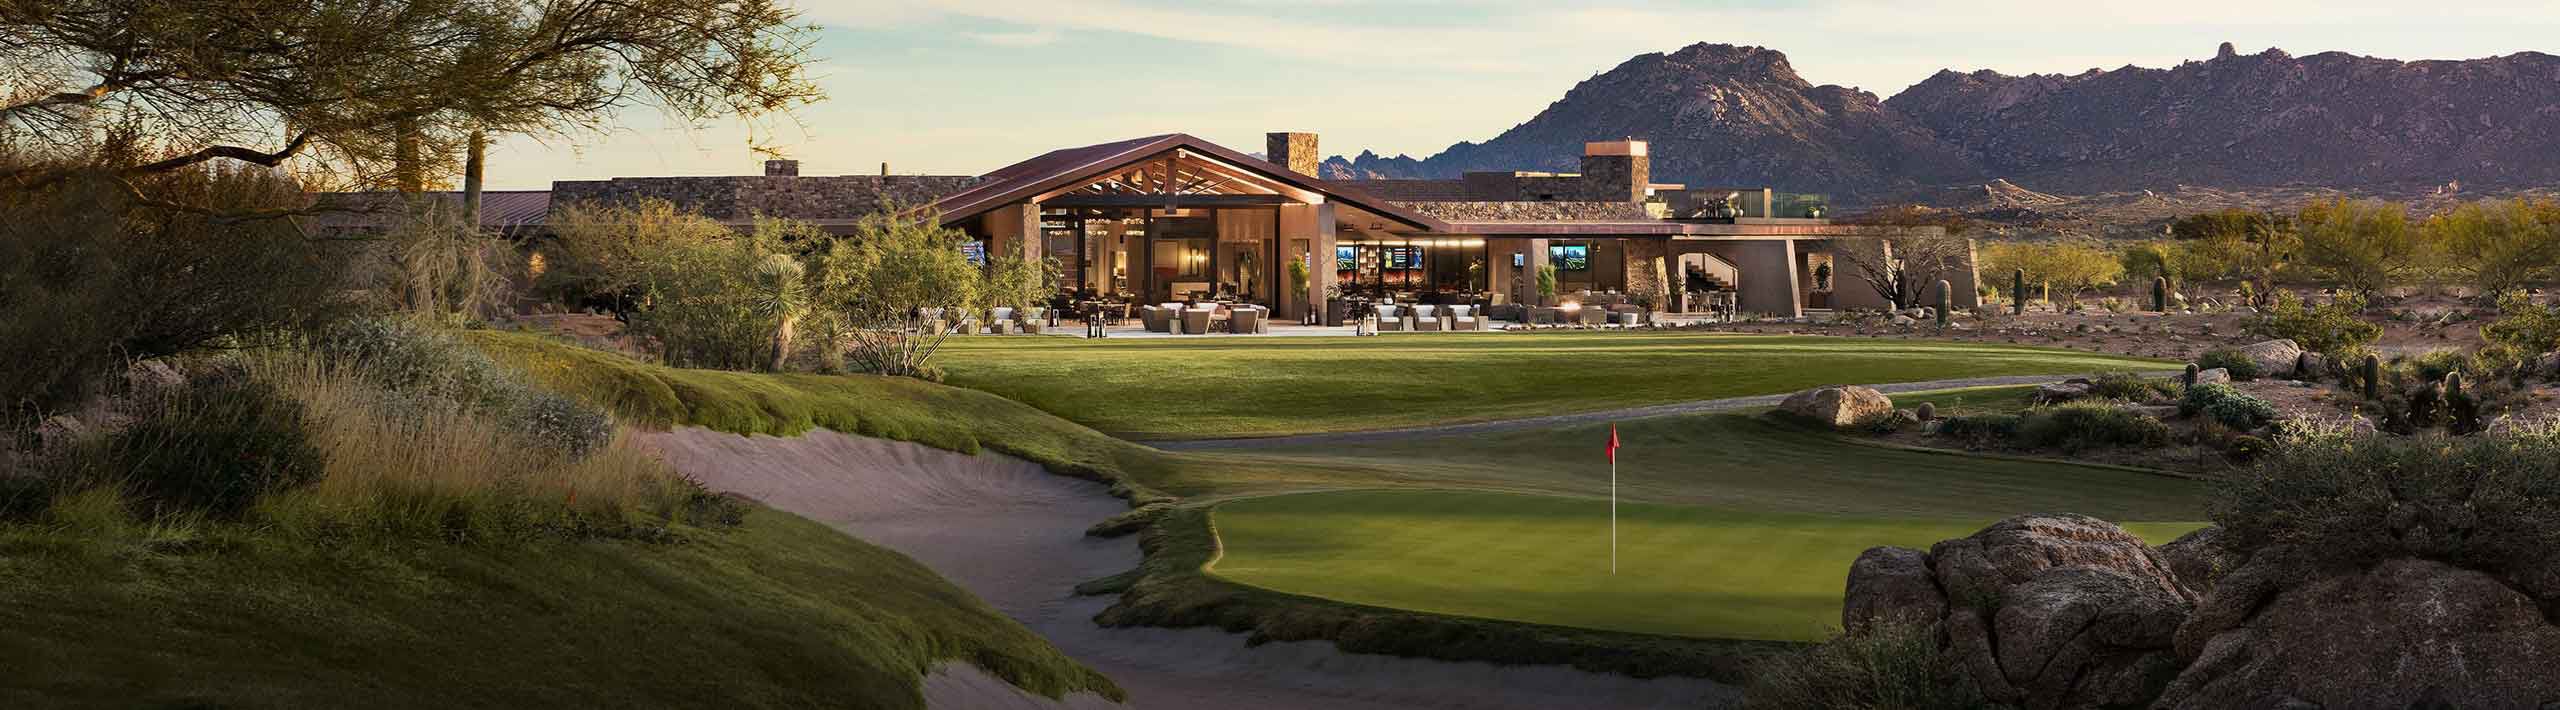 Club de golf national de Scottsdale